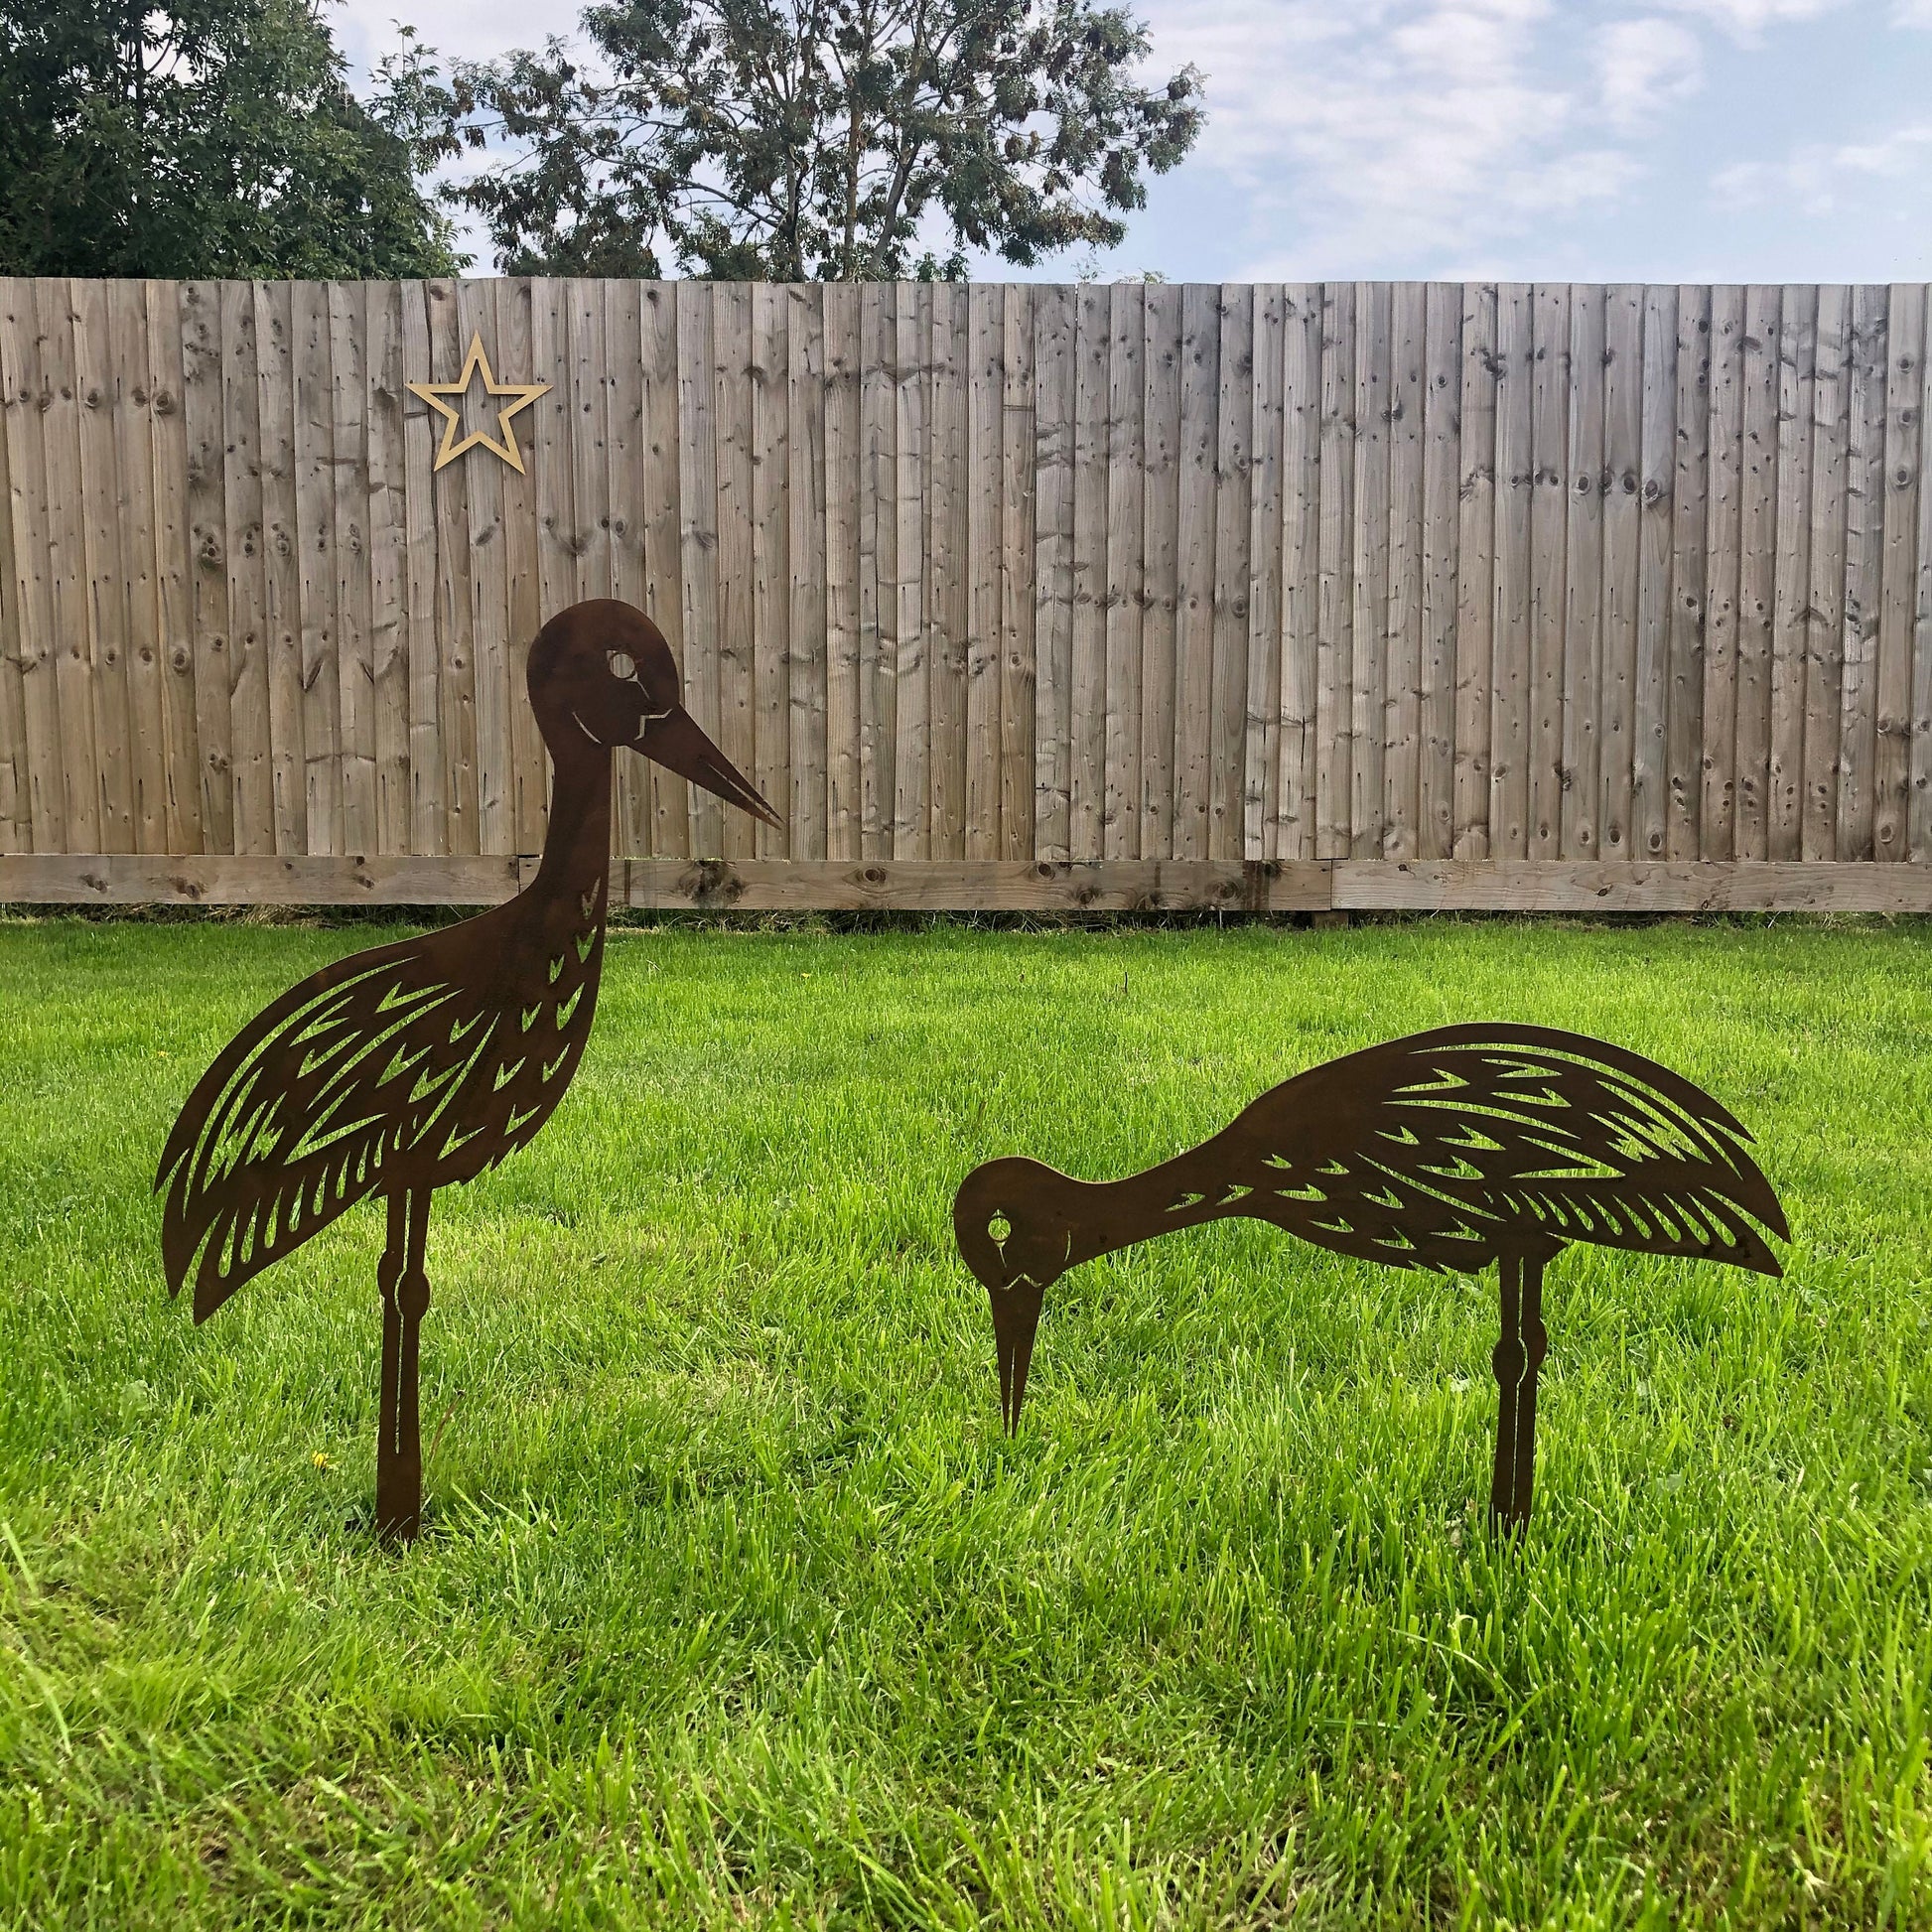 Pair of rusty metal garden storks